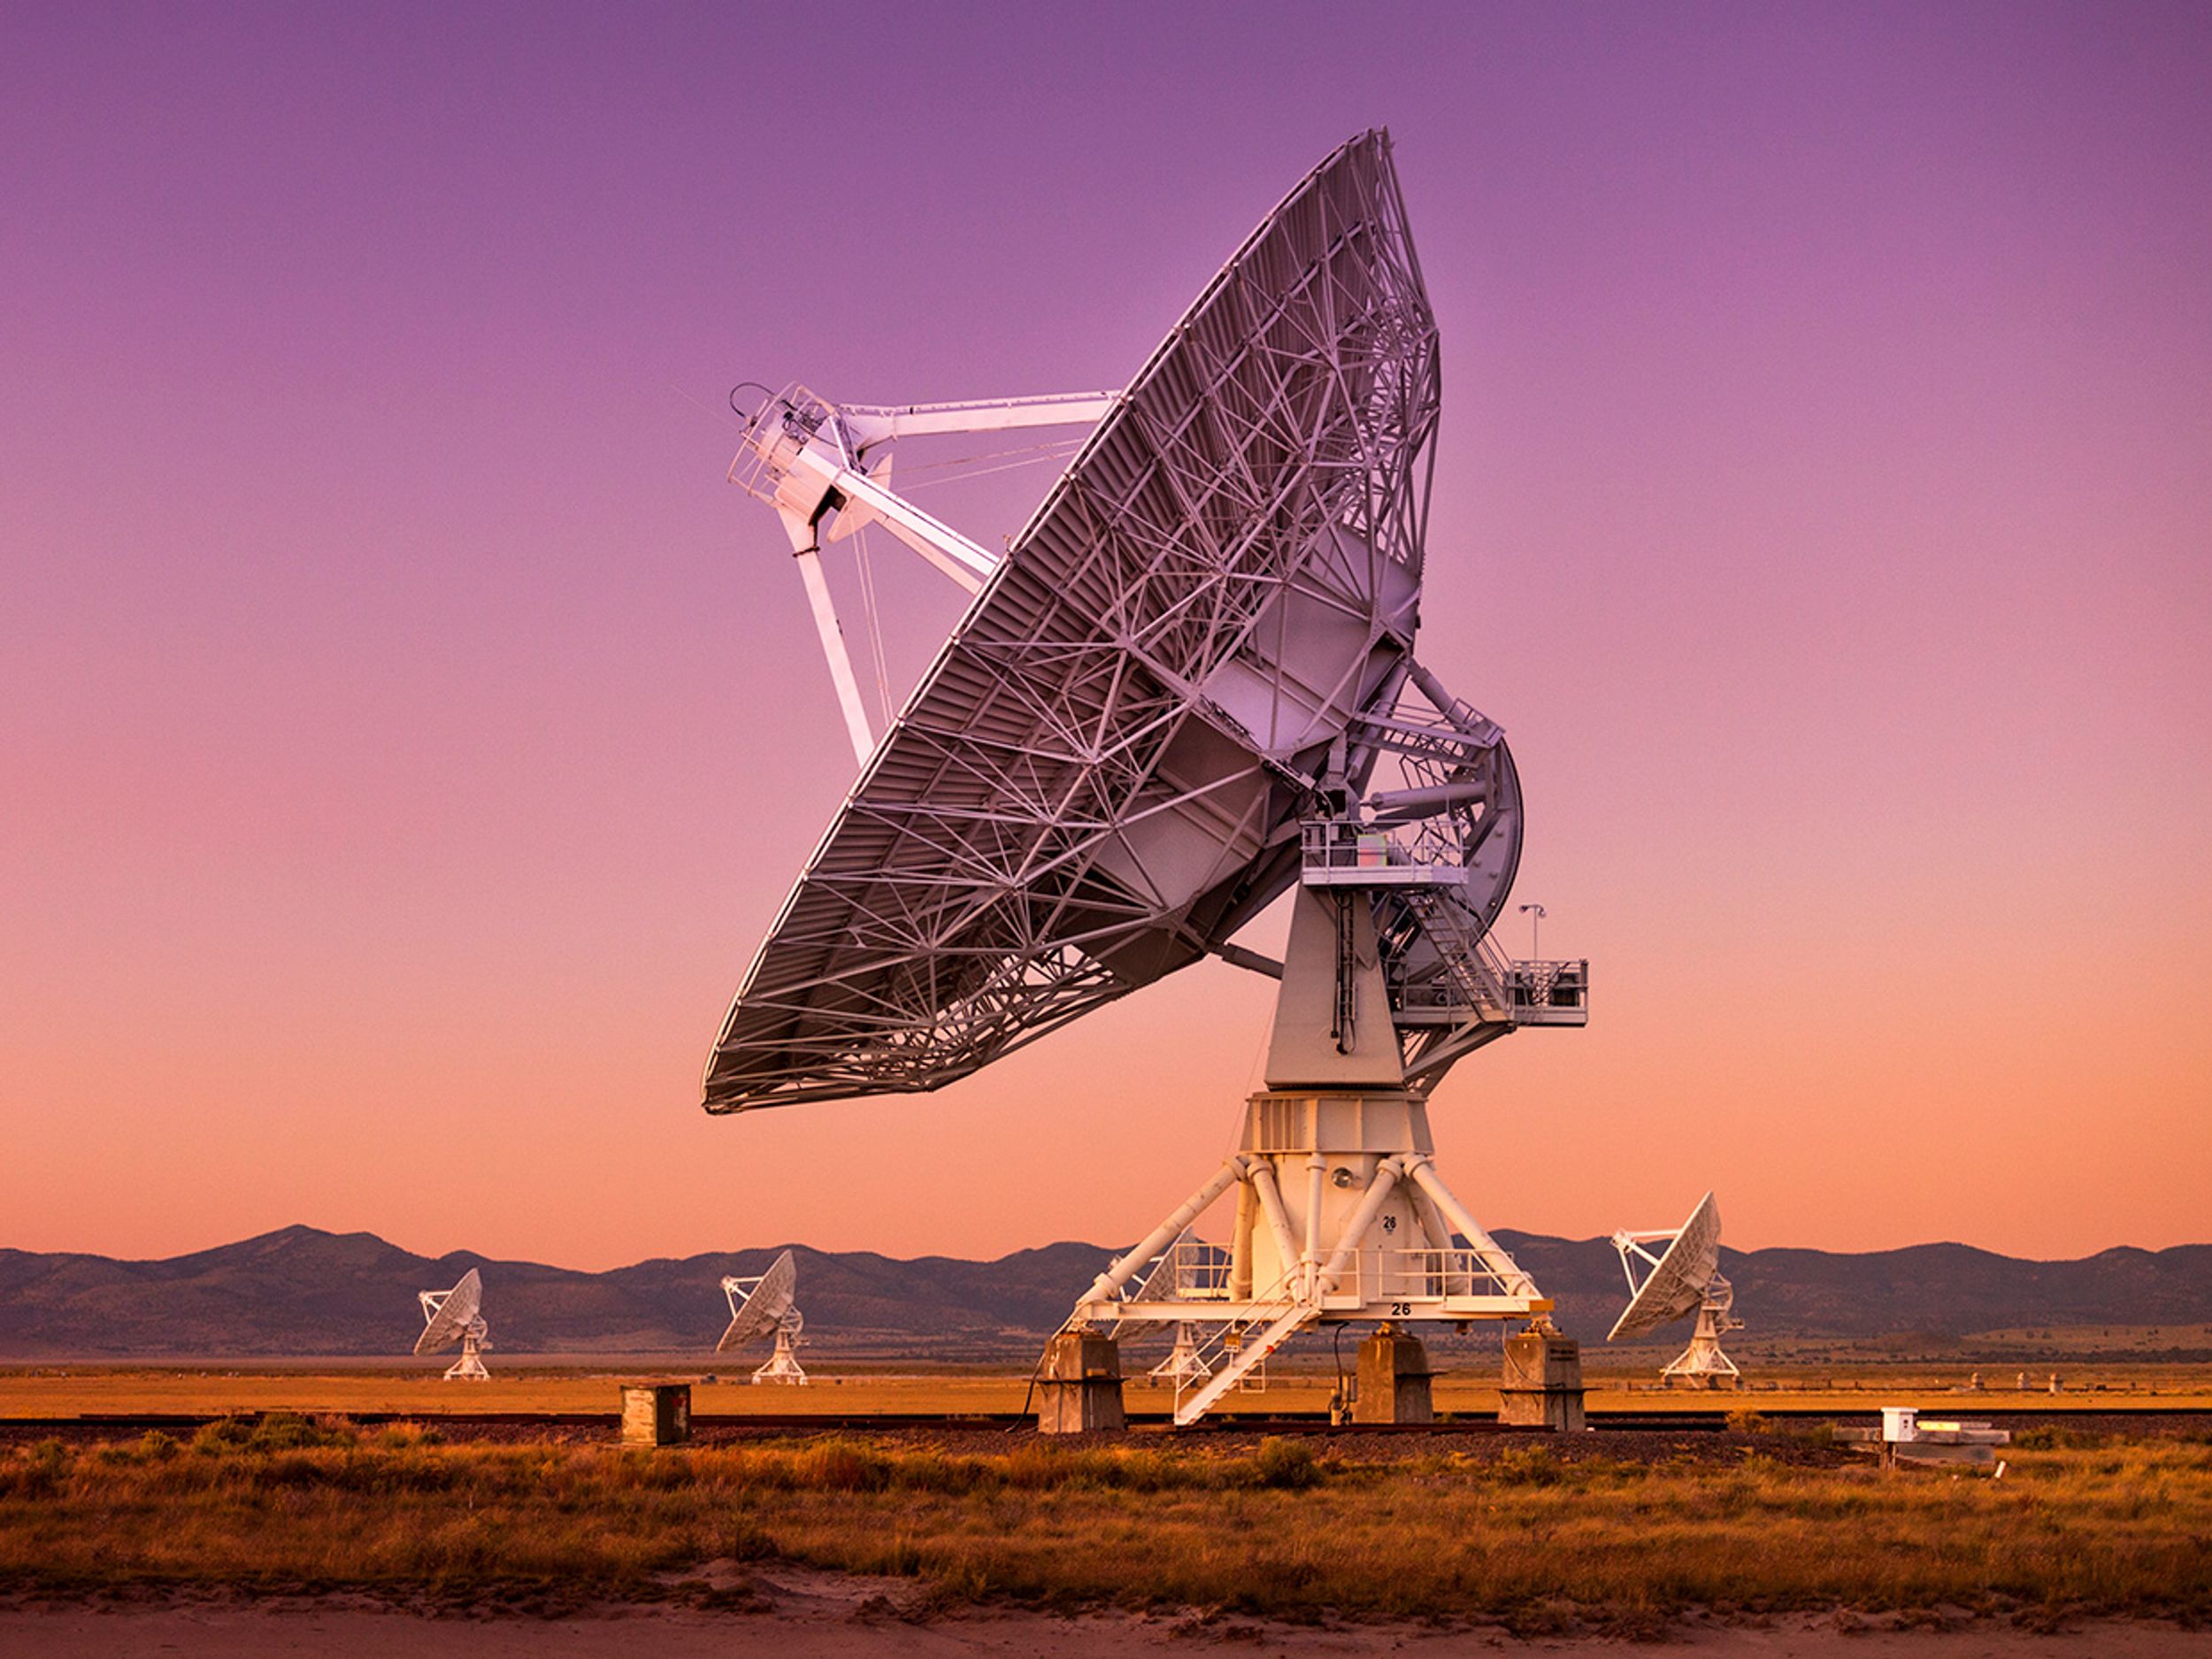 Radio antenna dishes of the Very Large Array radio telescope near Socorro, New Mexico